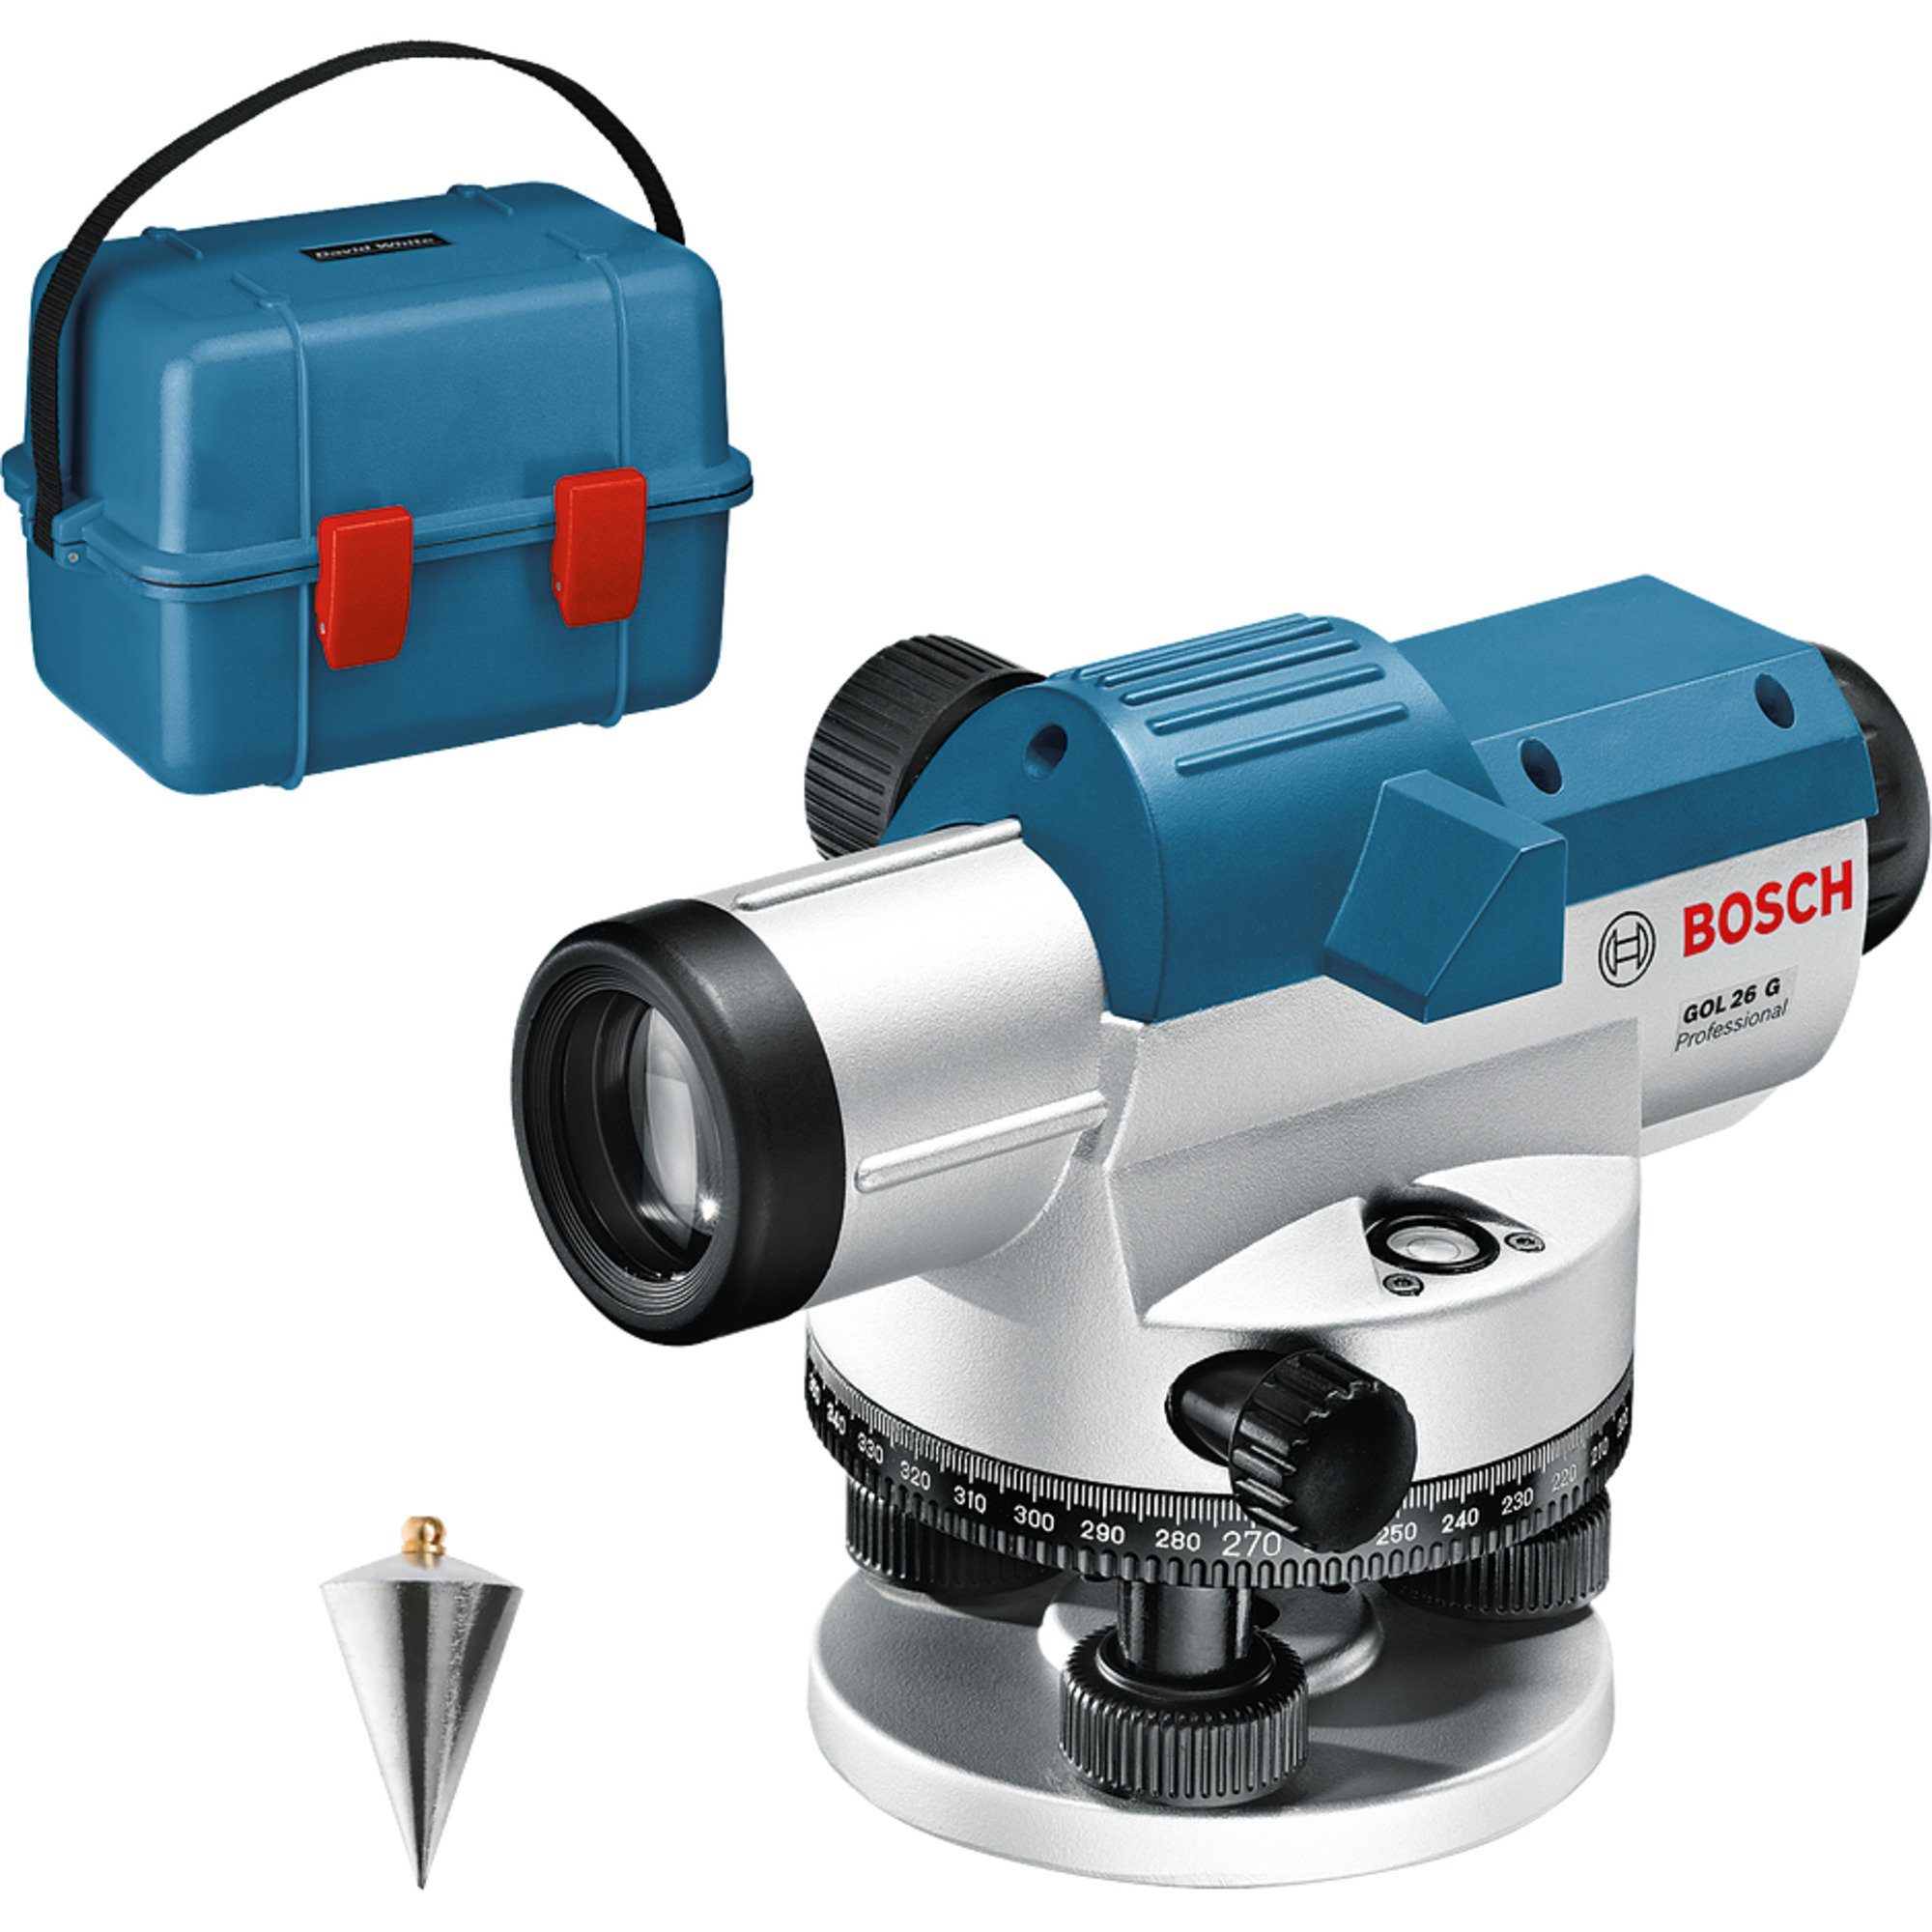 BOSCH Akku-Multifunktionswerkzeug Bosch Professional Optisches Nivelliergerät GOL 26